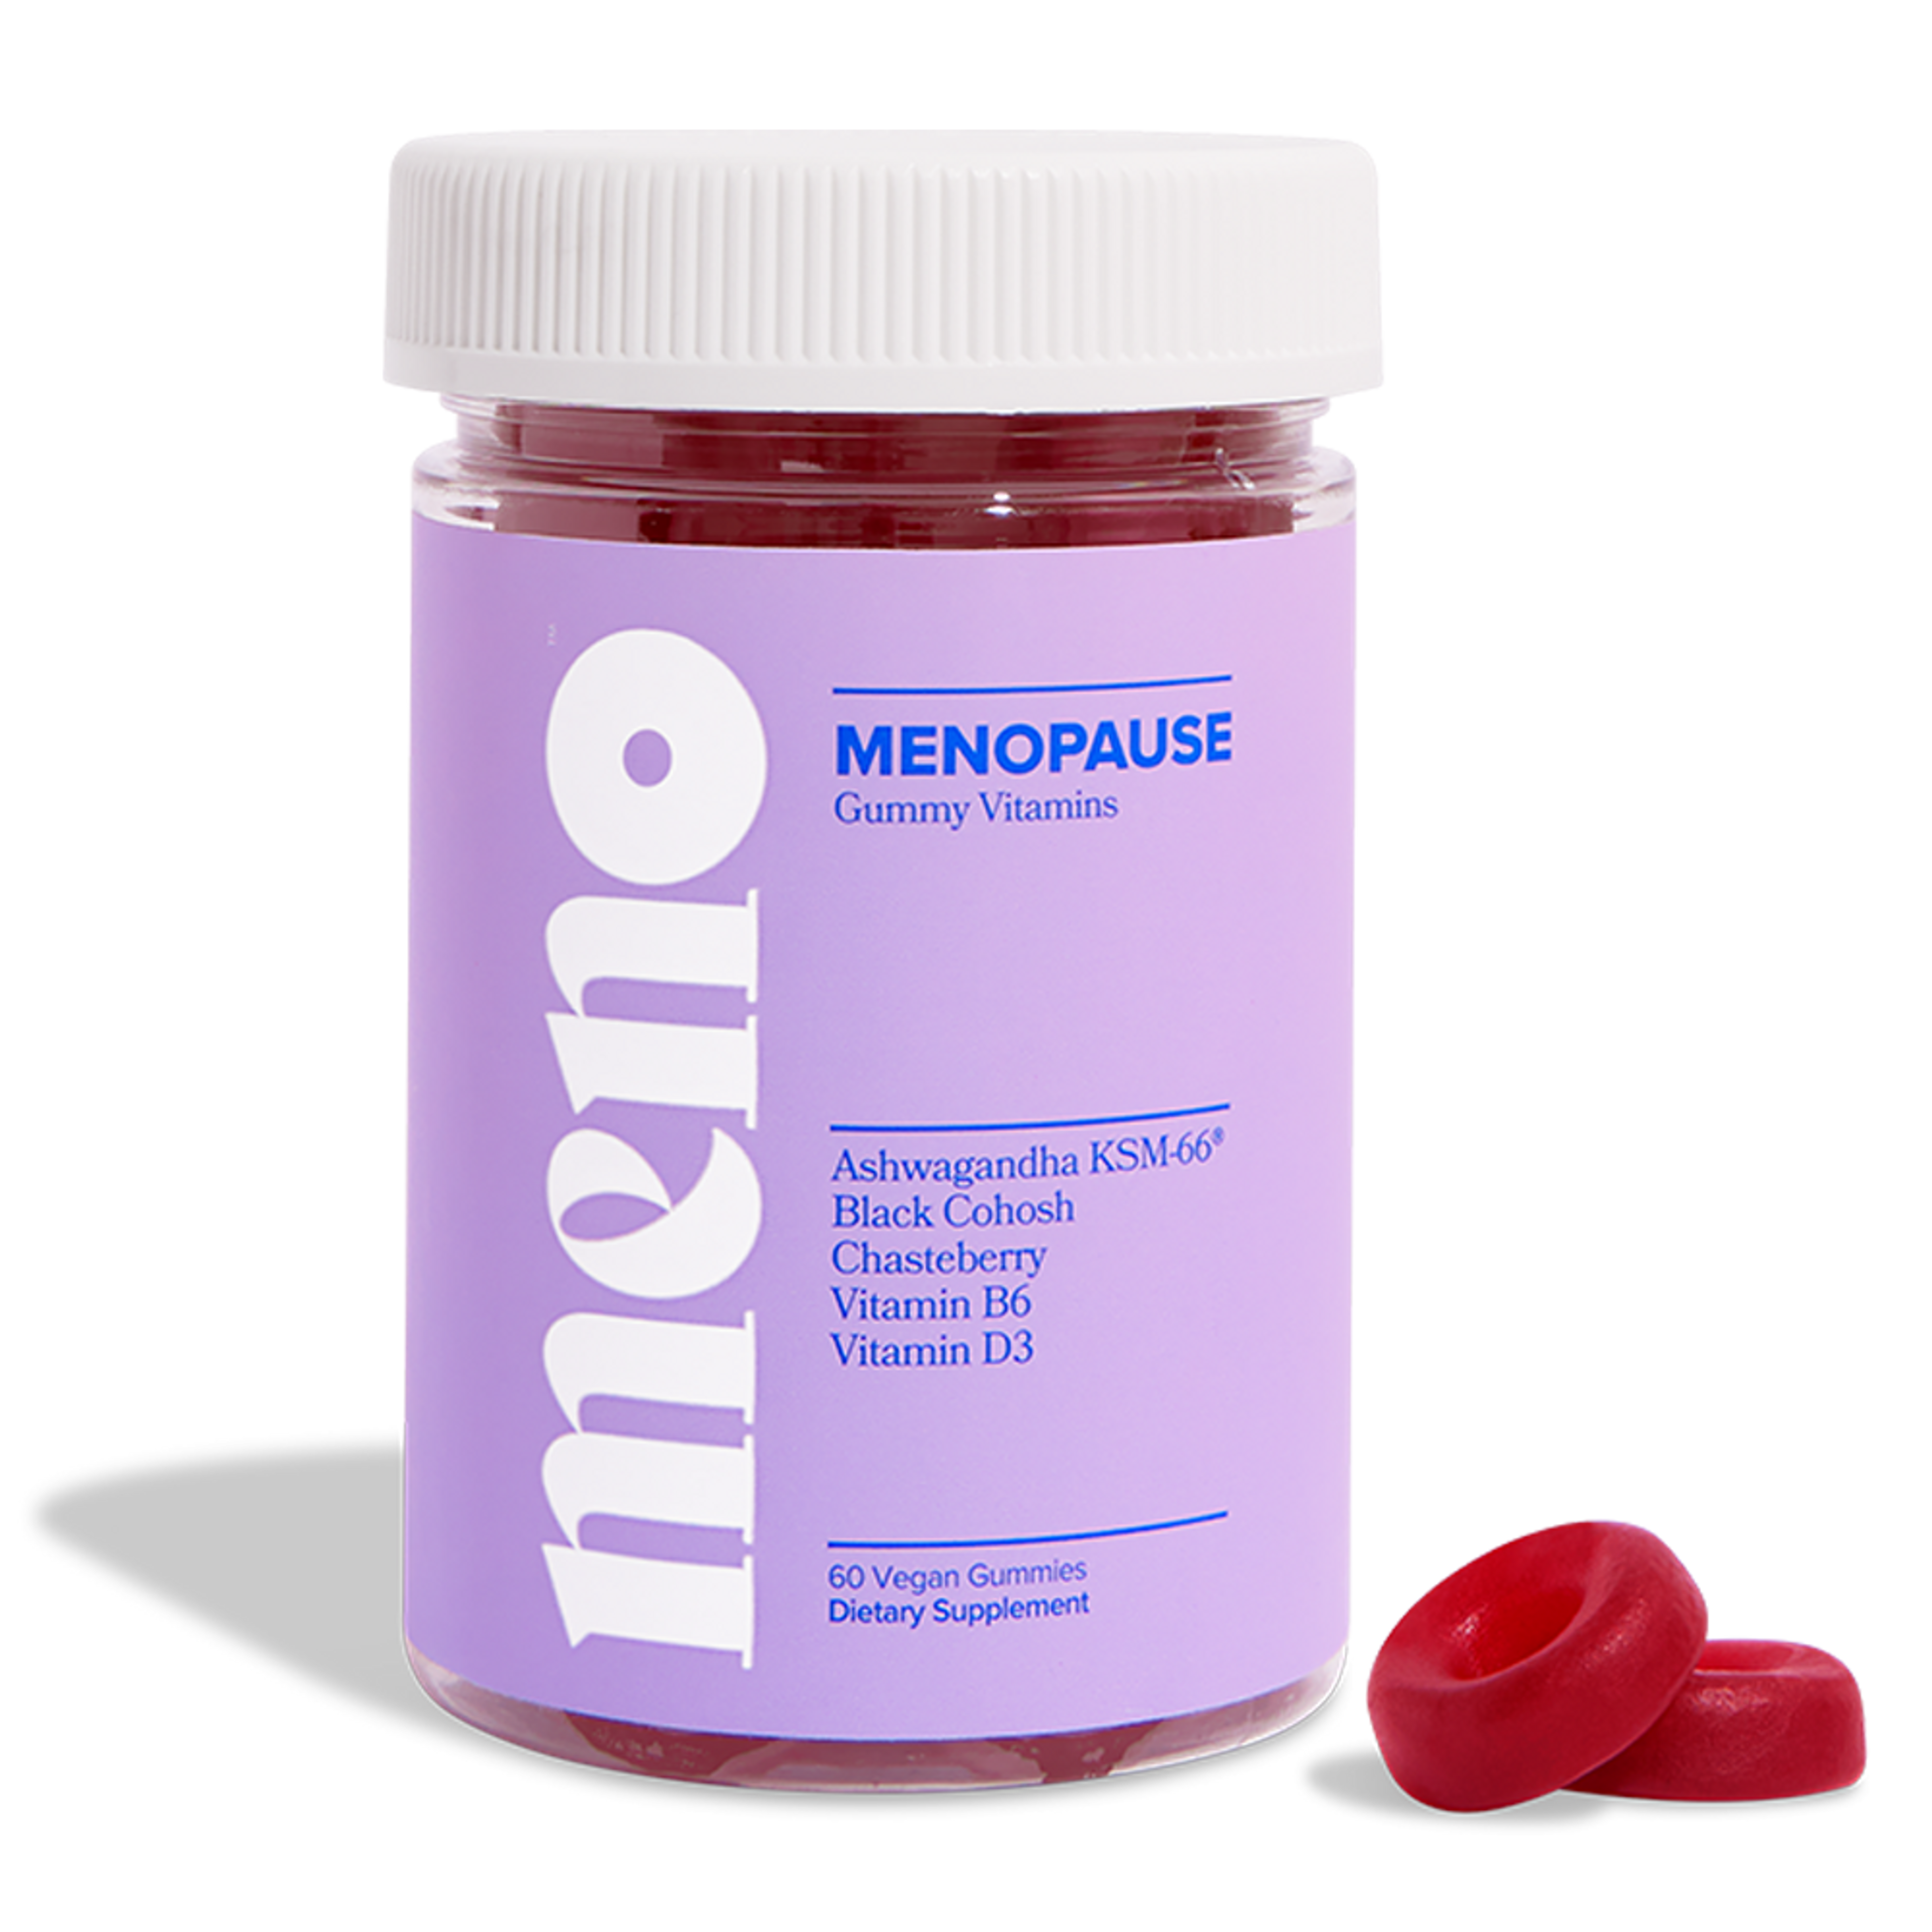 MENO - Menopause Gummy Vitamins